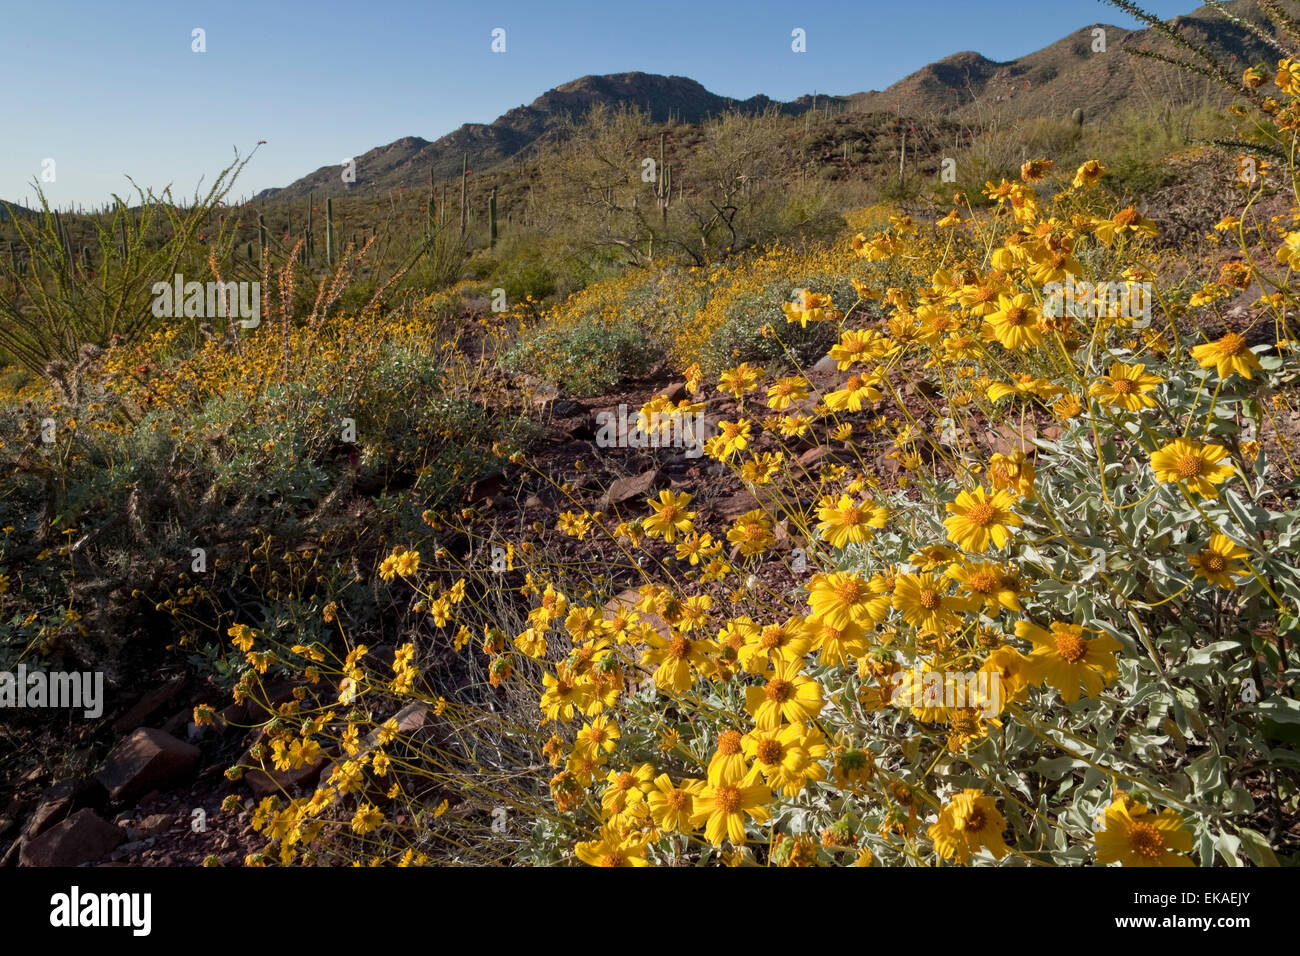 Brittlebush fleurit au printemps (Encelia farinosa) - Saguaro National Park, AZ Banque D'Images